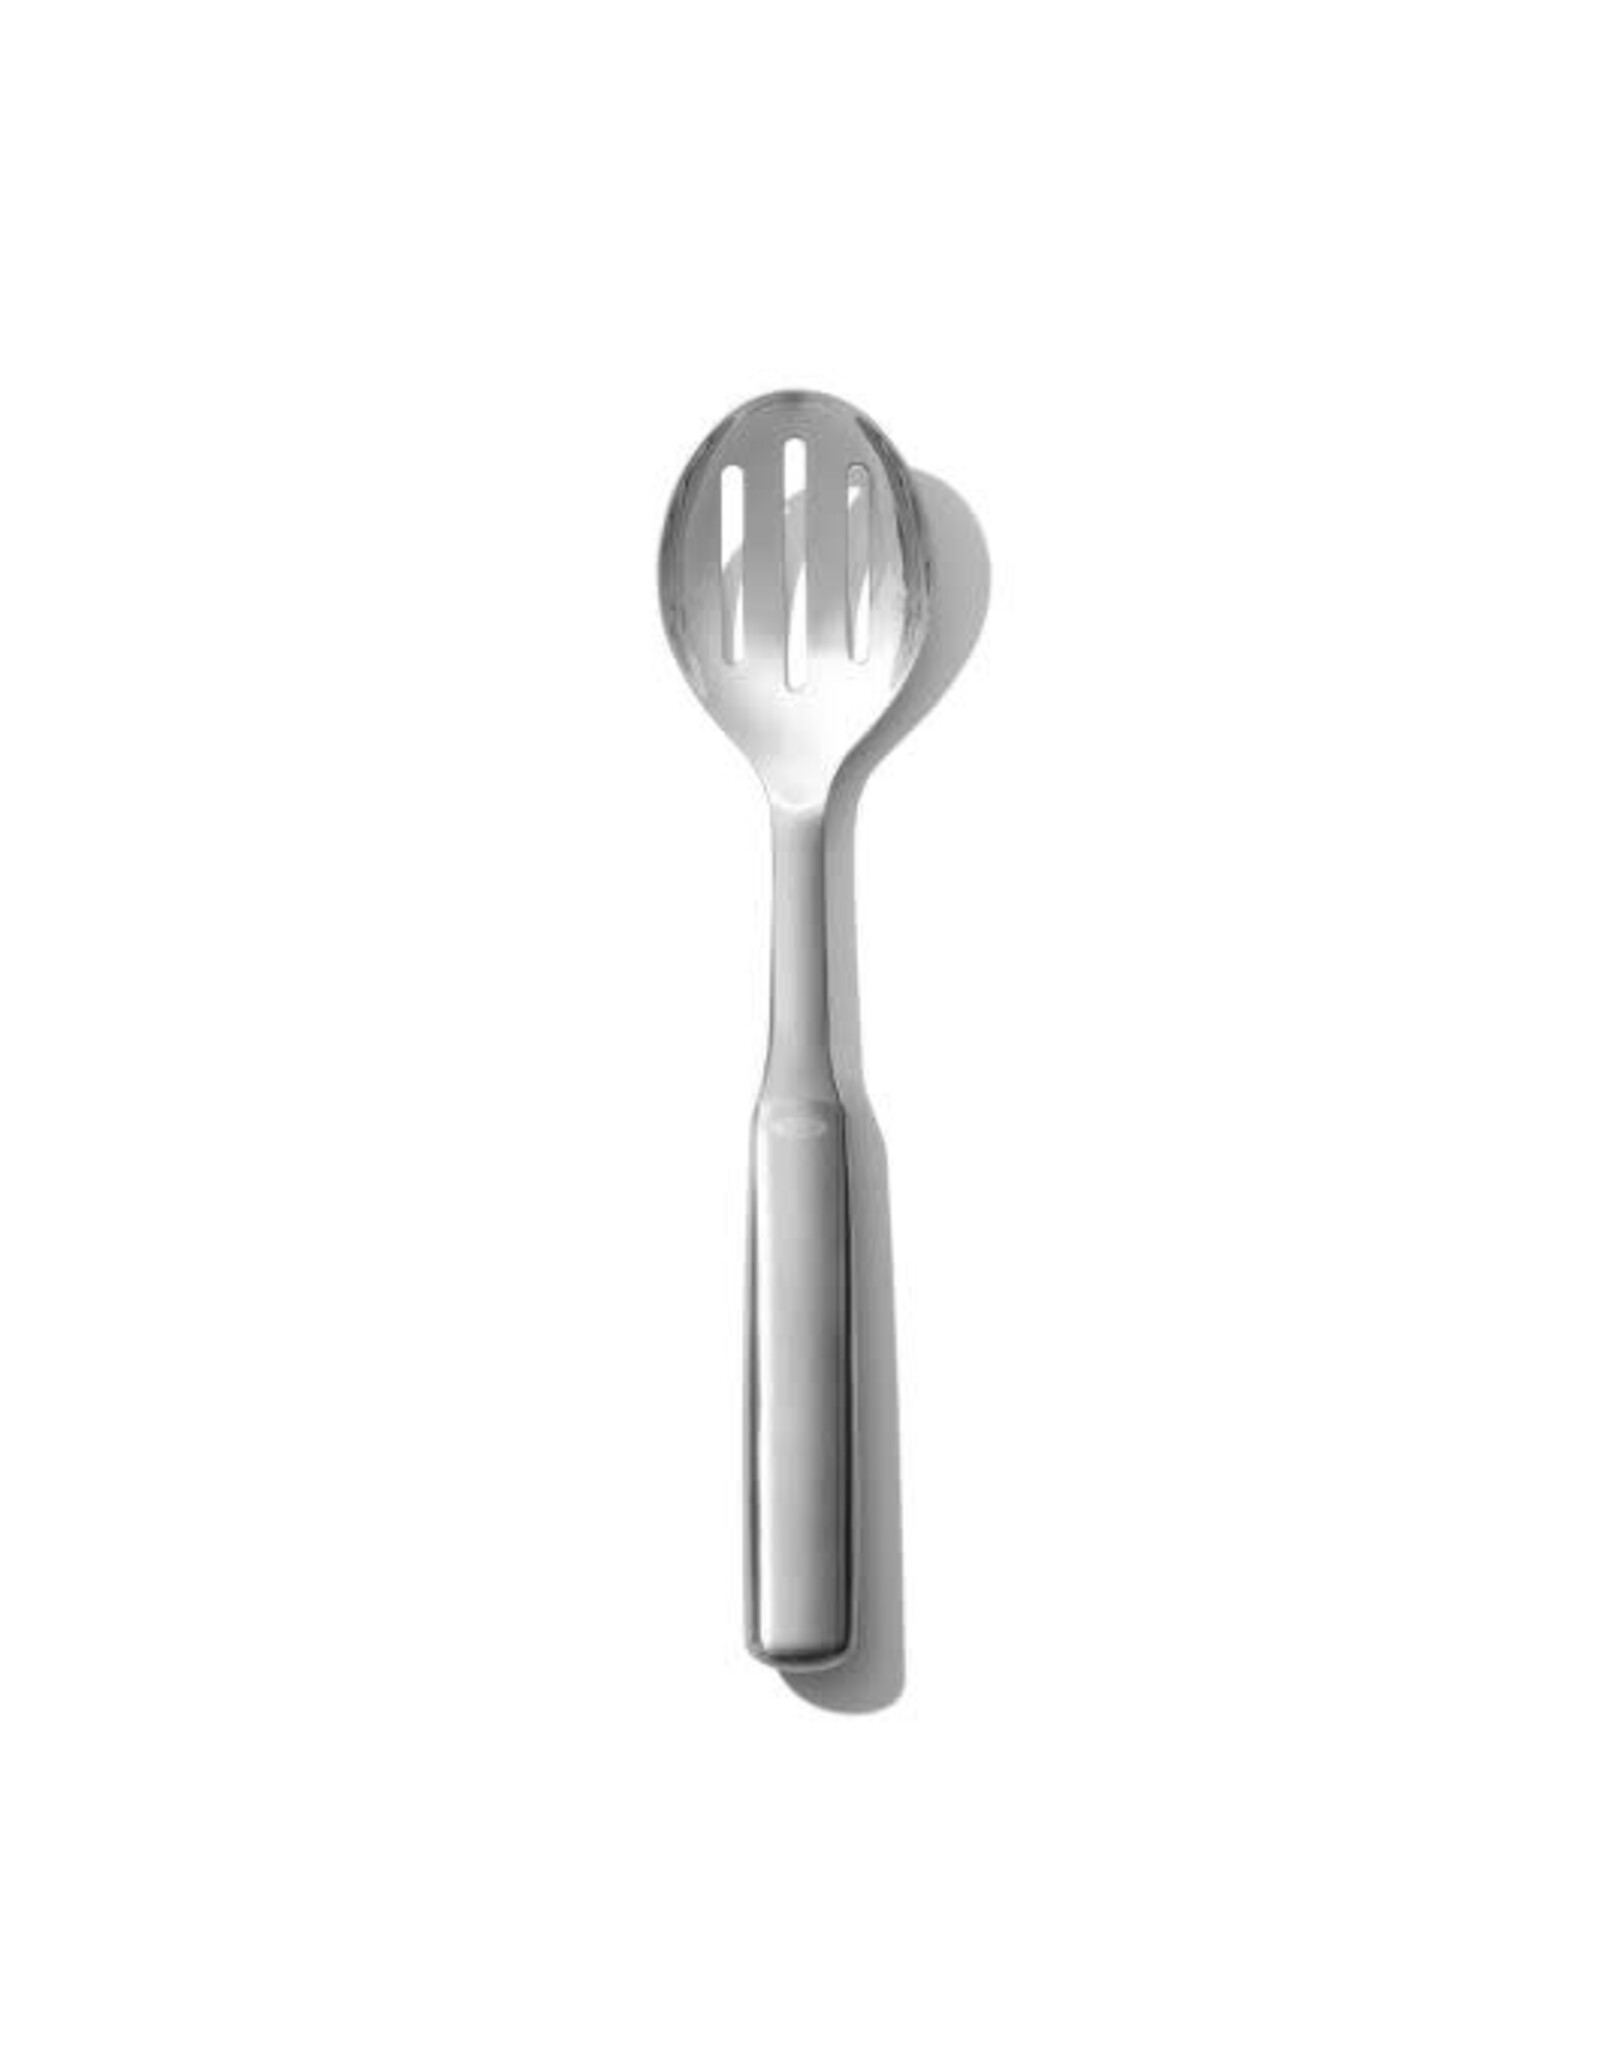 https://cdn.shoplightspeed.com/shops/635781/files/56590730/1600x2048x2/oxo-oxo-steel-slotted-serving-spoon.jpg